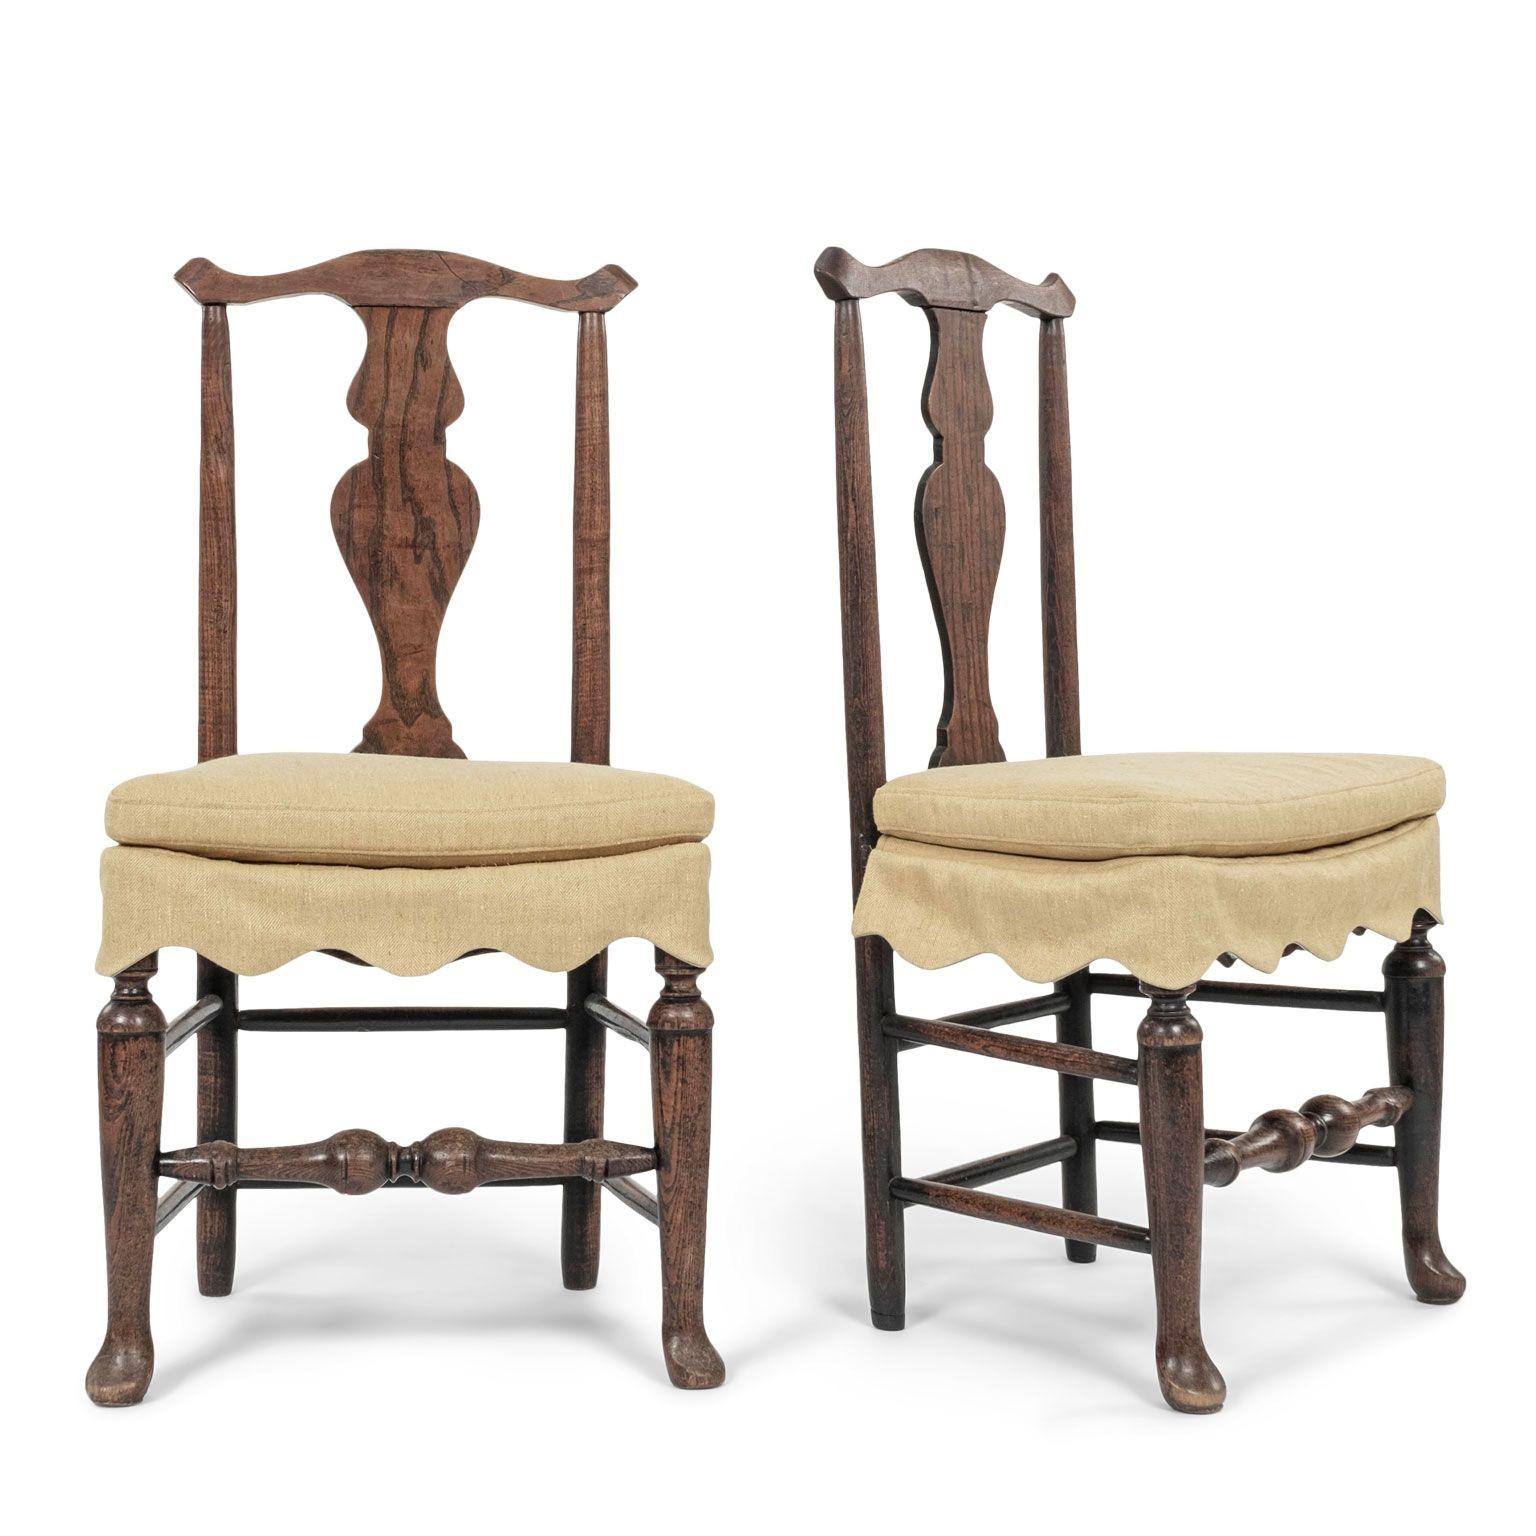 Paire de chaises d'appoint en orme habillées de jupes en lin couleur moutarde. Chaises d'appoint anglaises sculptées à la main dans du bois d'orme dans le style Queen Anne vers 1750-1779. Magnifique grain de bois et couleur brune. Robuste, stable et